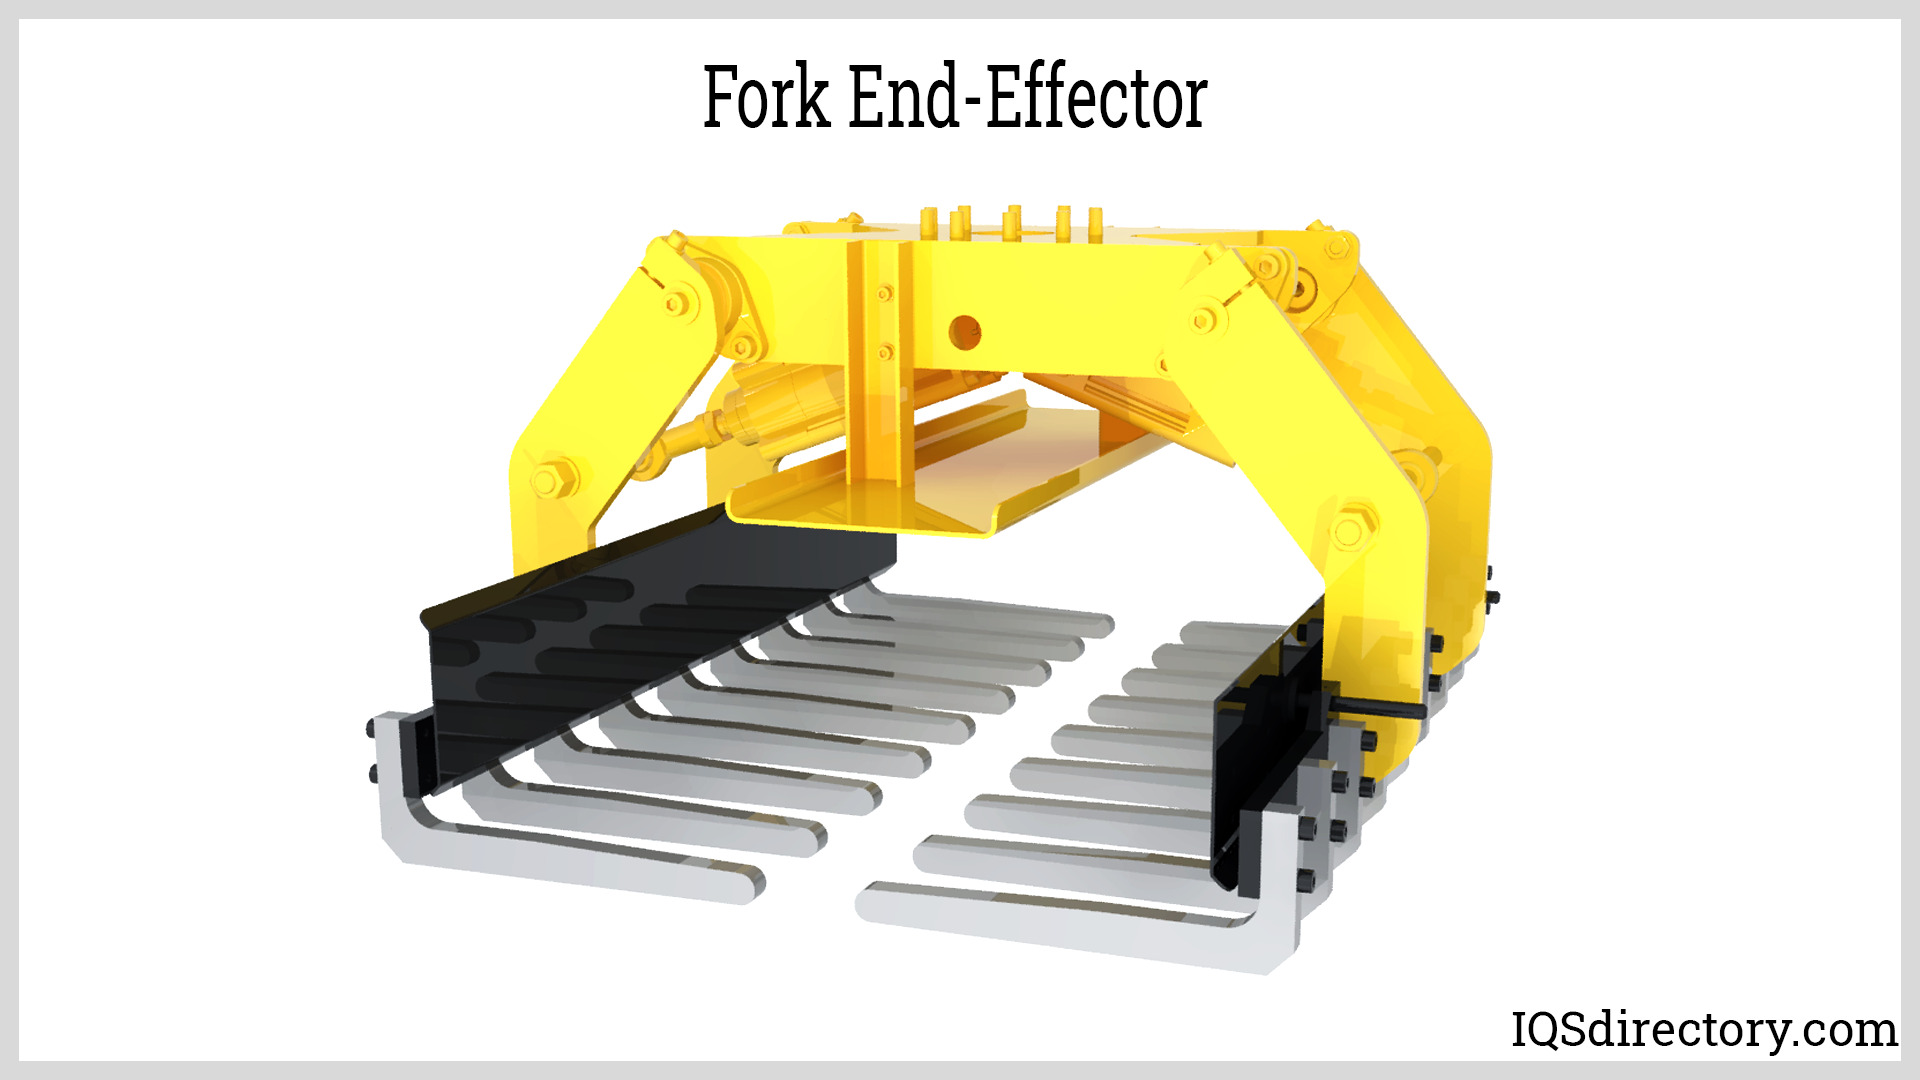 Fork End-Effector